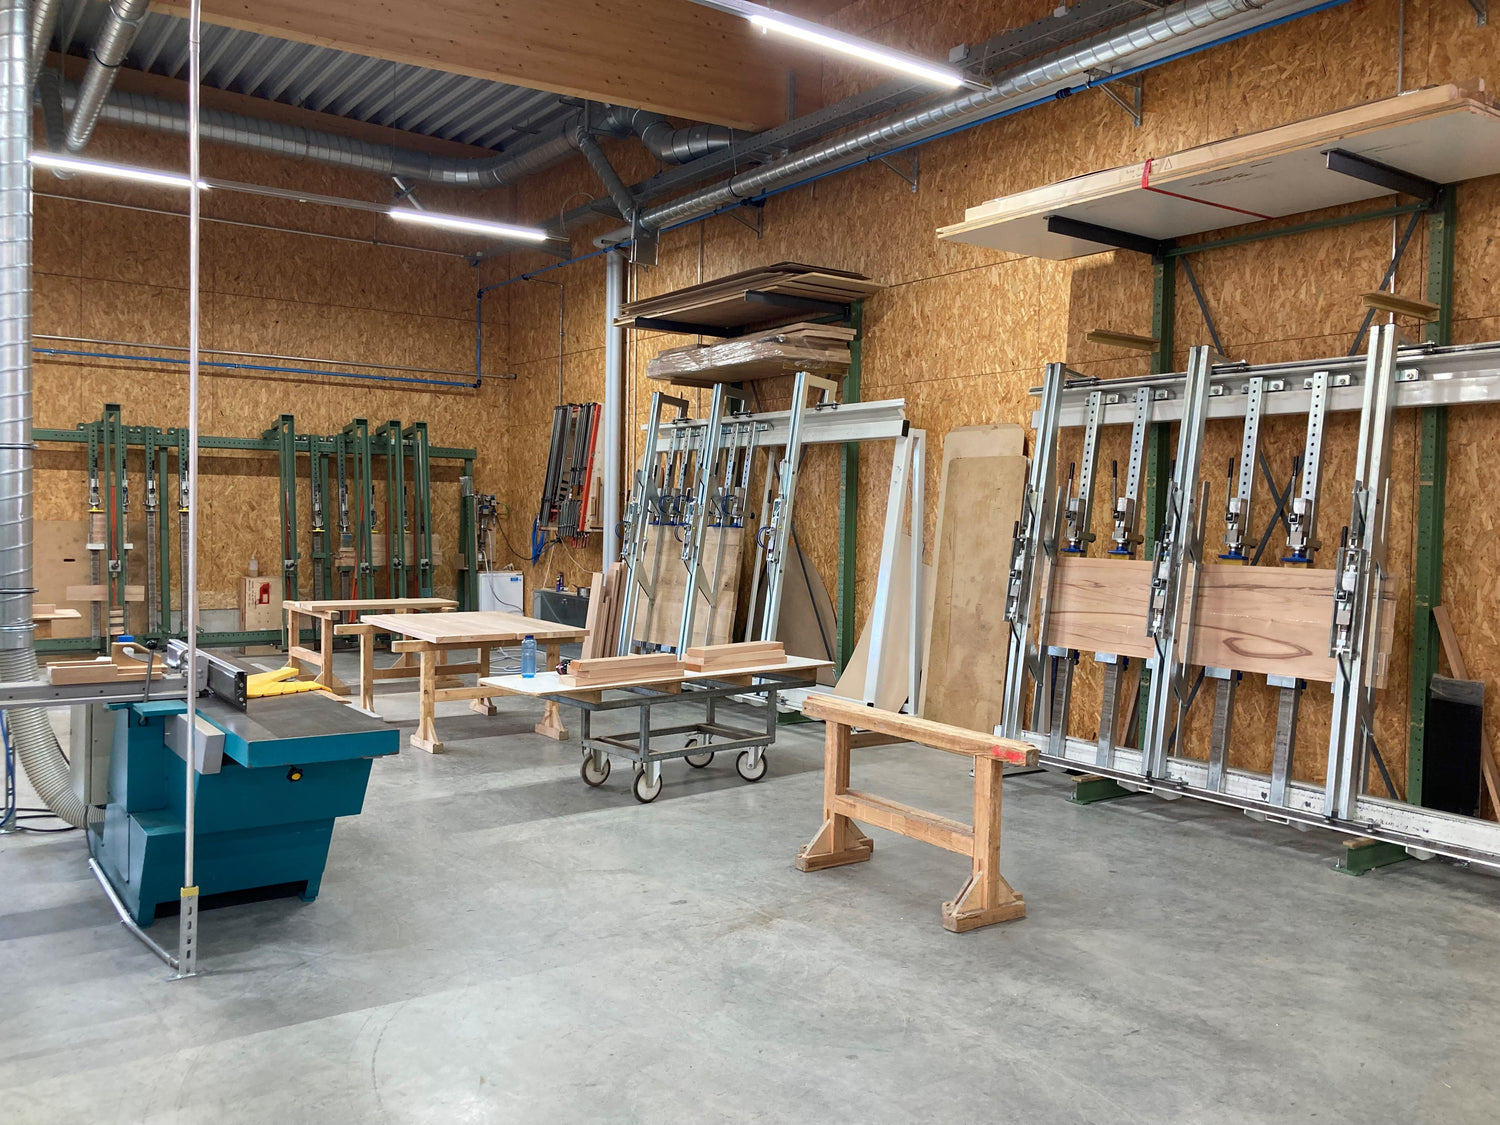 Hobelmaschine und Leimständer zur Herstellung von Möbelteilen aus Massivholz